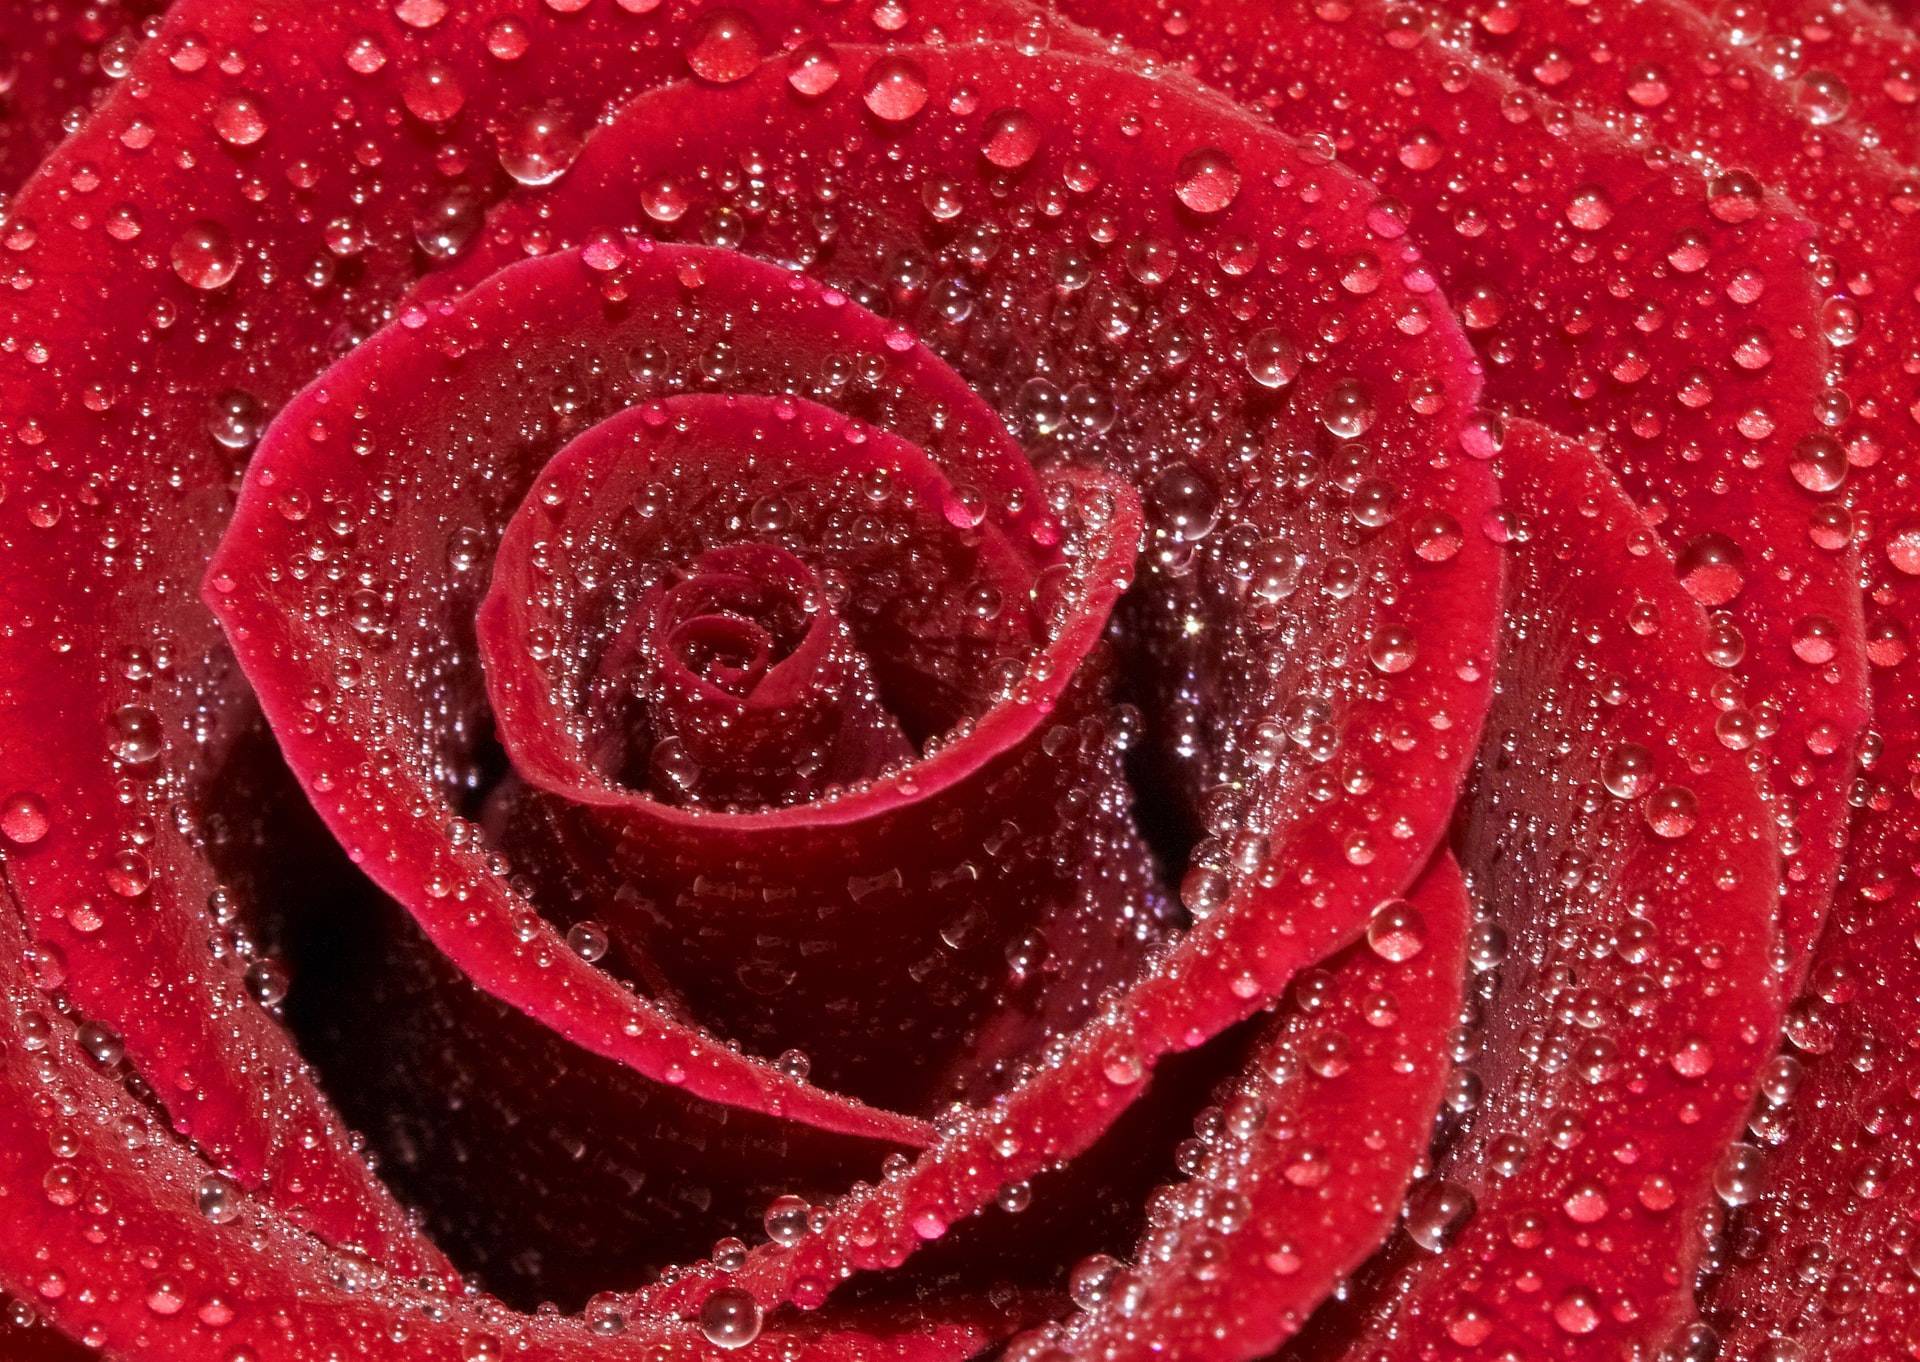 Rose with big droplets. Она видела розы